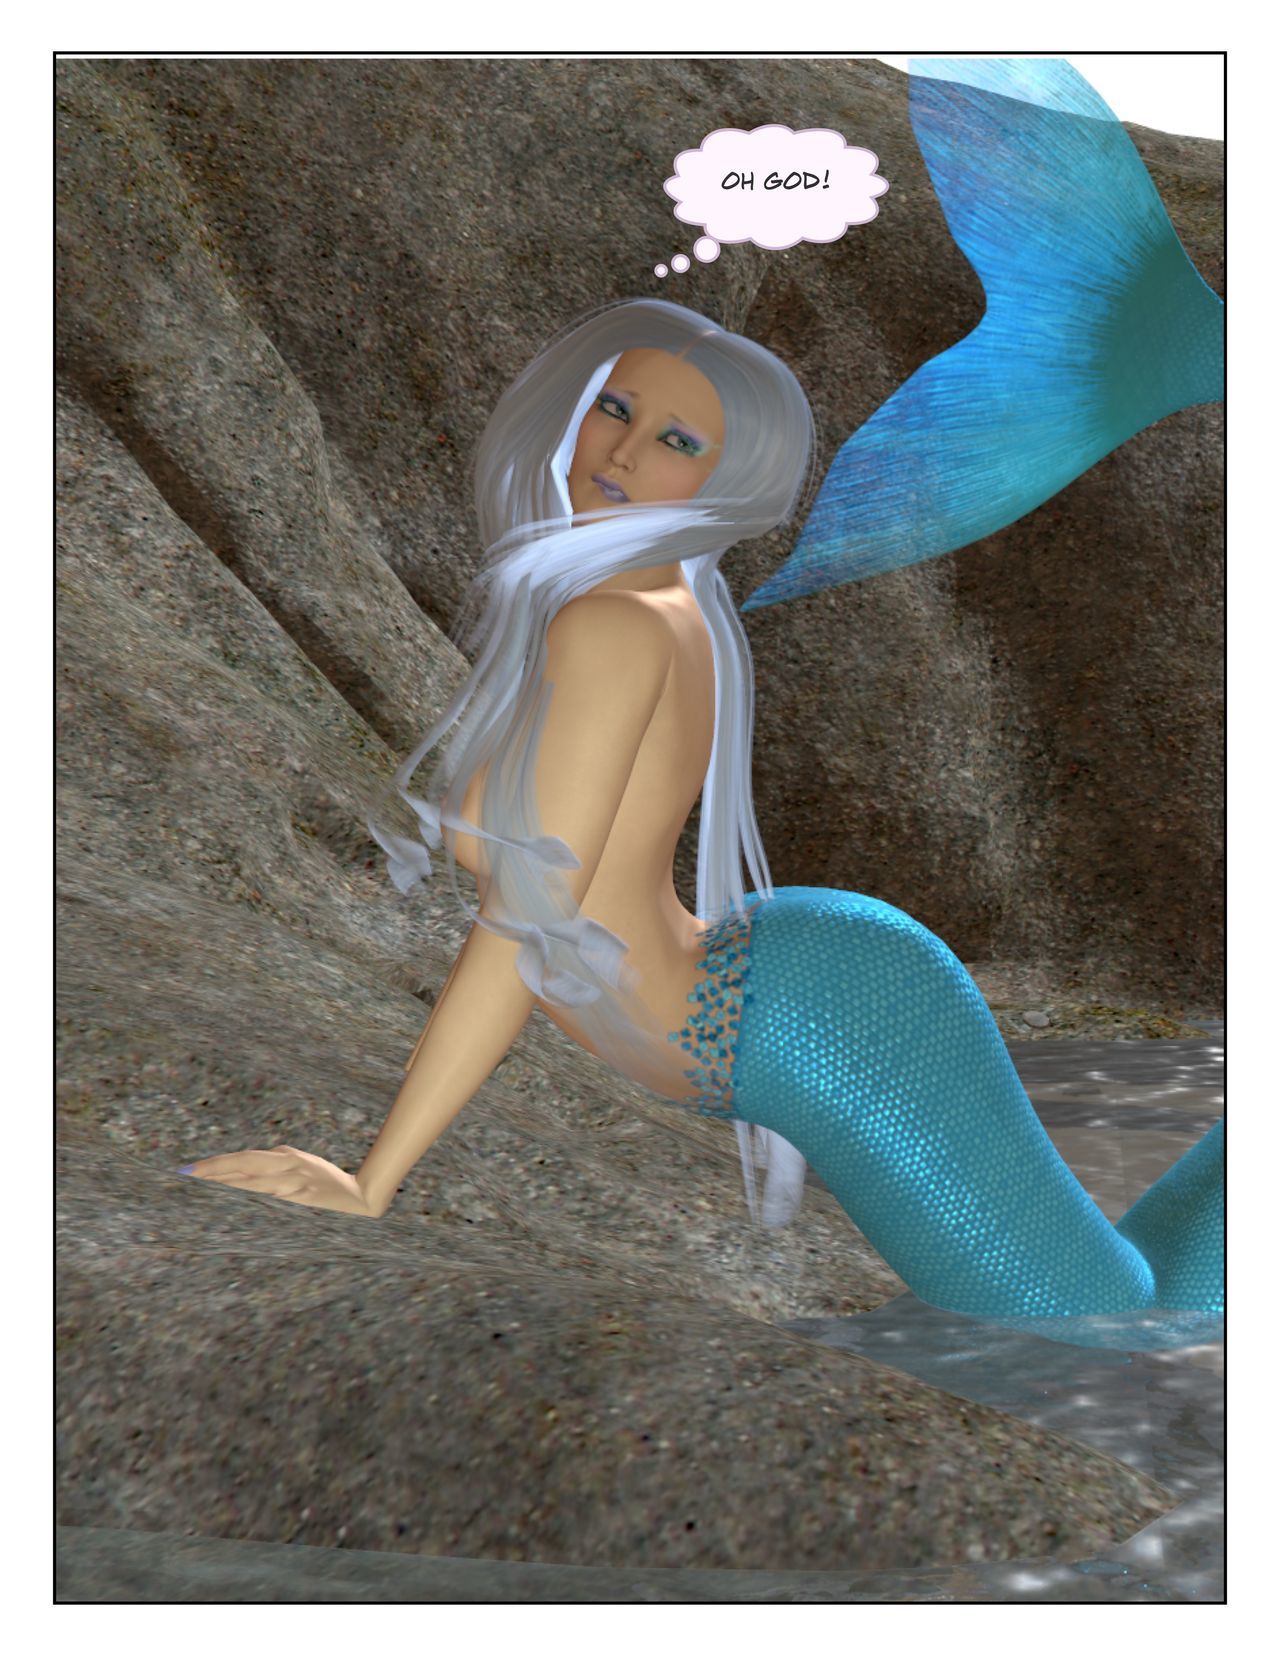 [Ariana] Mermaids - part 3